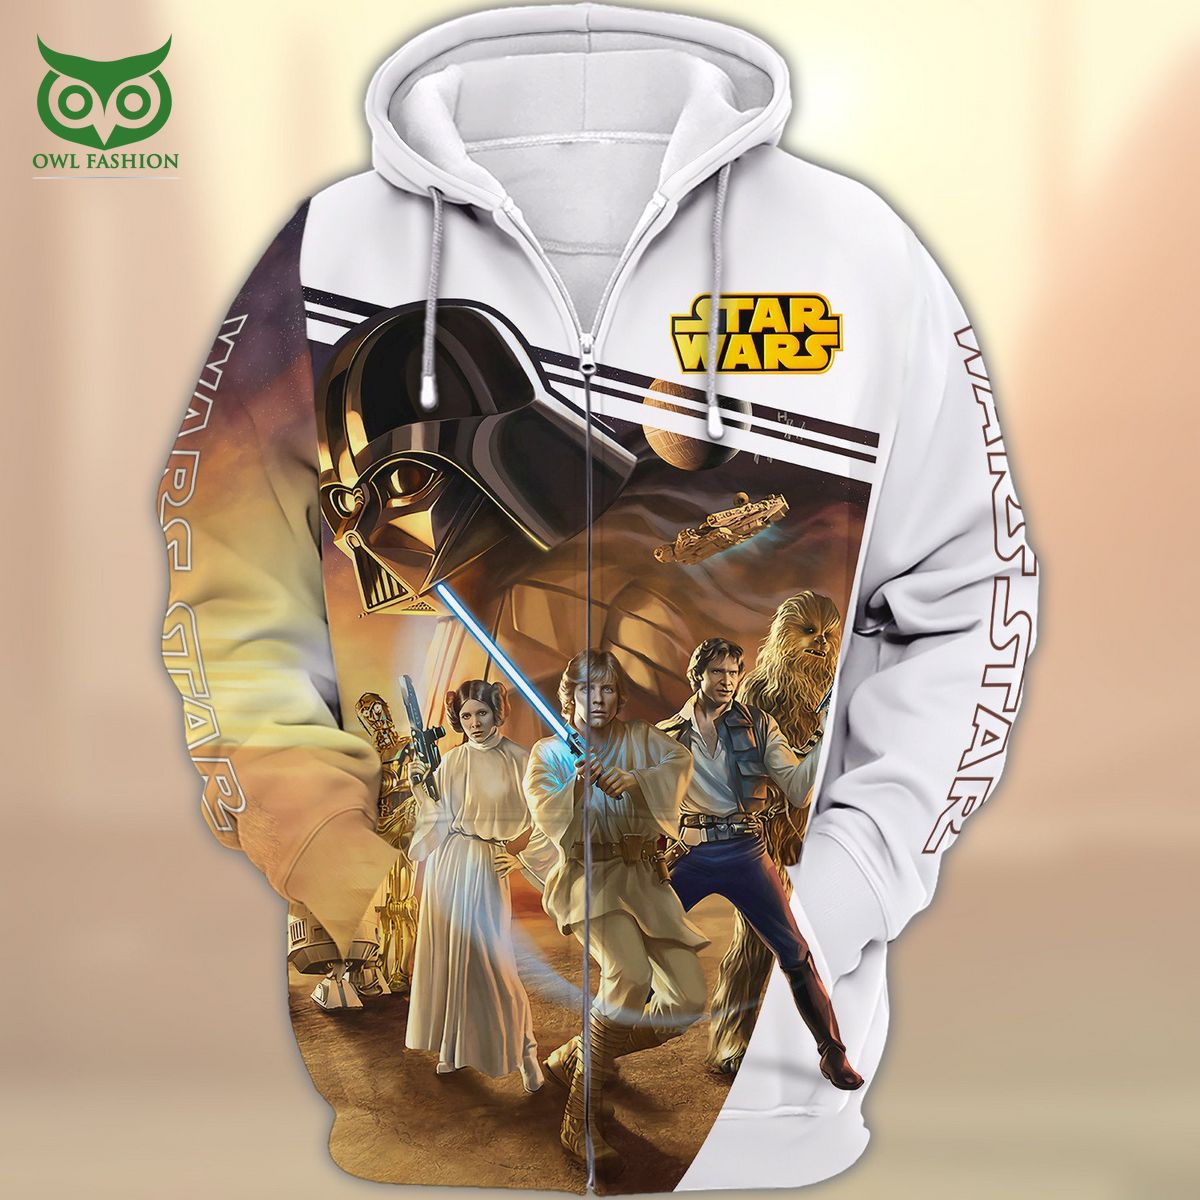 original trilogy star wars 3d zipper hoodie tshirt 1 lkbjY